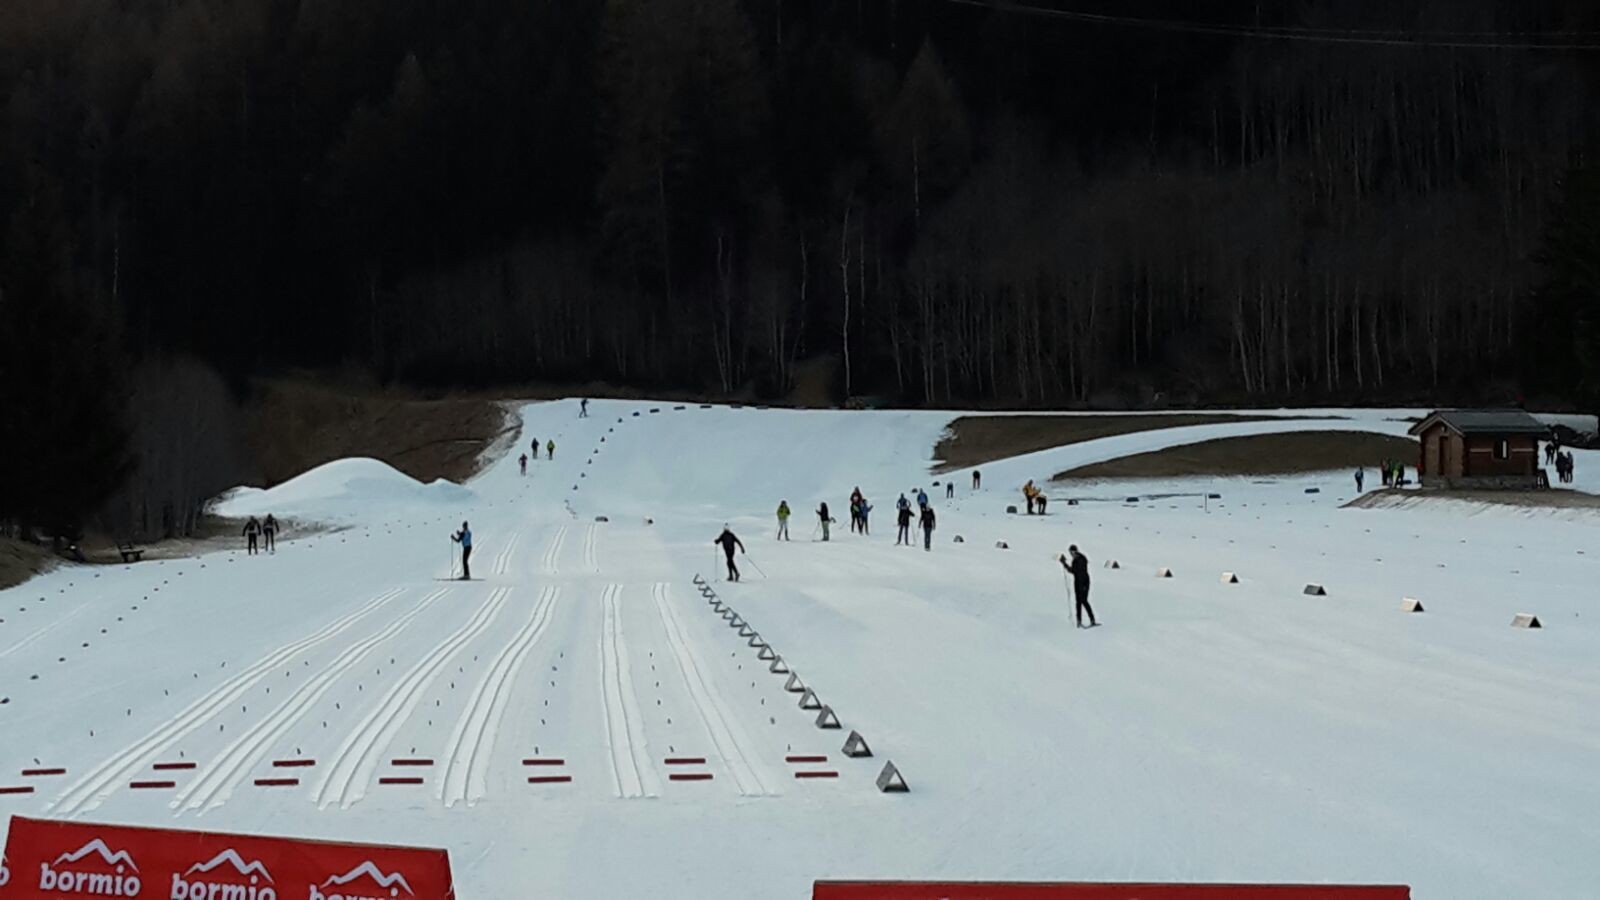 Tribbia nei giovani femminile e Comensoli fra gli under18 maschi nuovi campioni regionale sprint di sci nordico